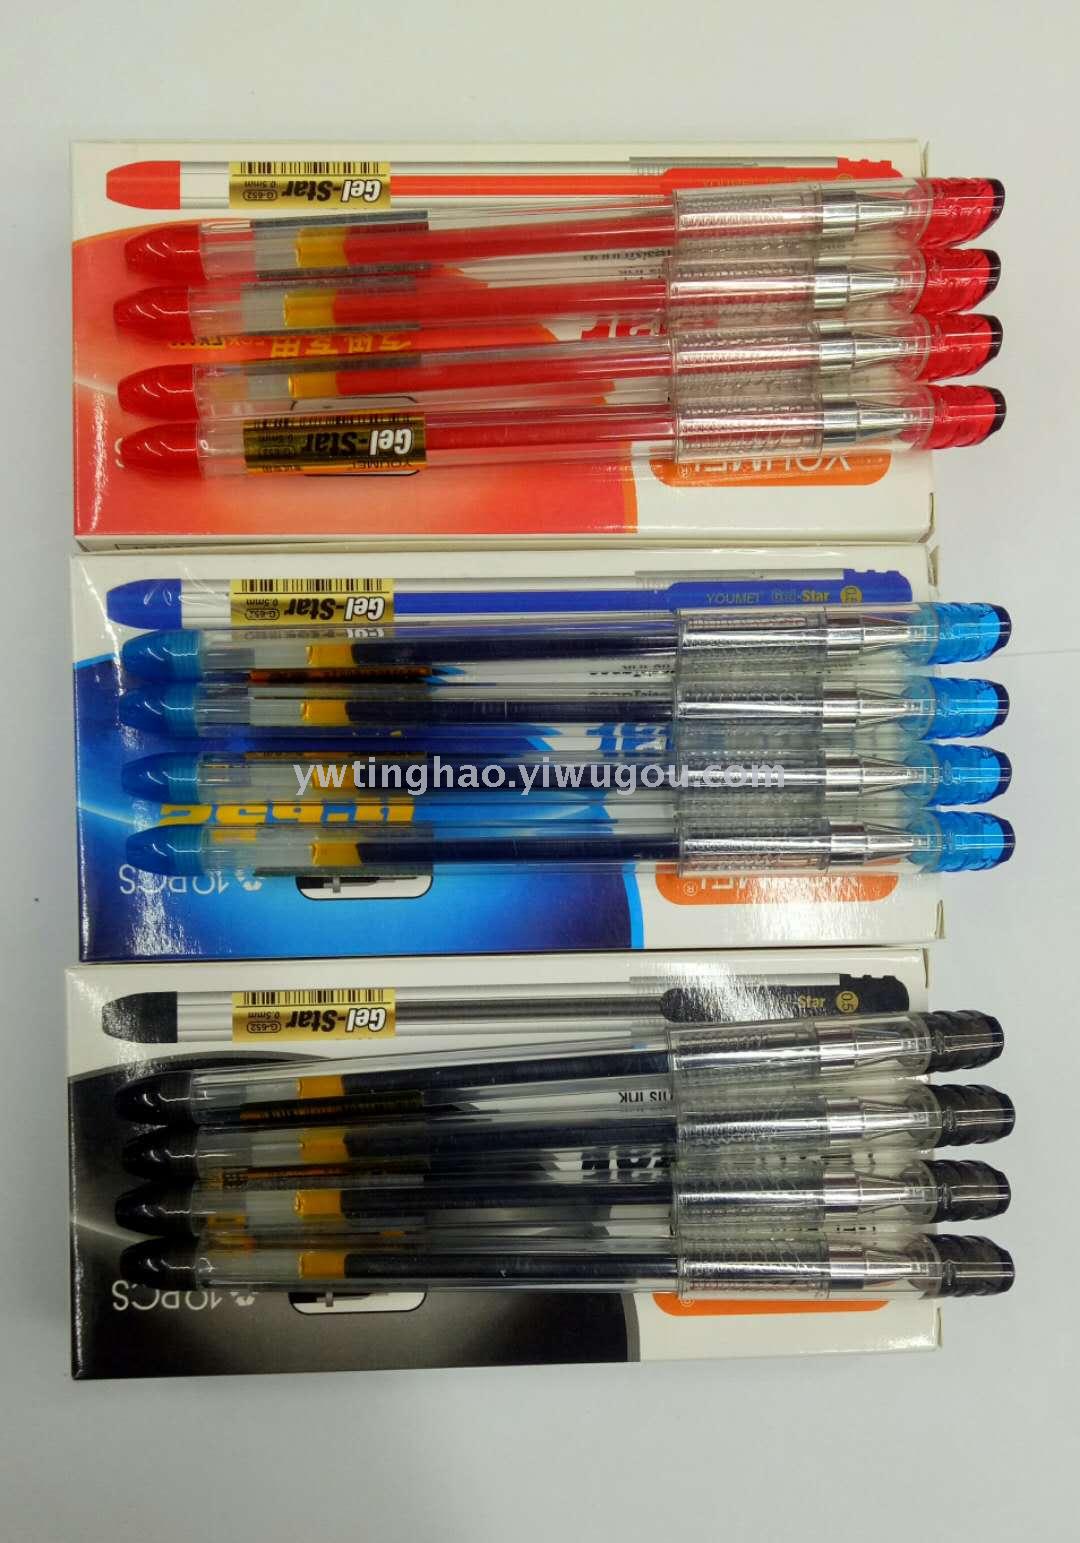 中性笔 针管中性笔 0.5mm中性笔 办公学生中性笔 学习用品 办公用品